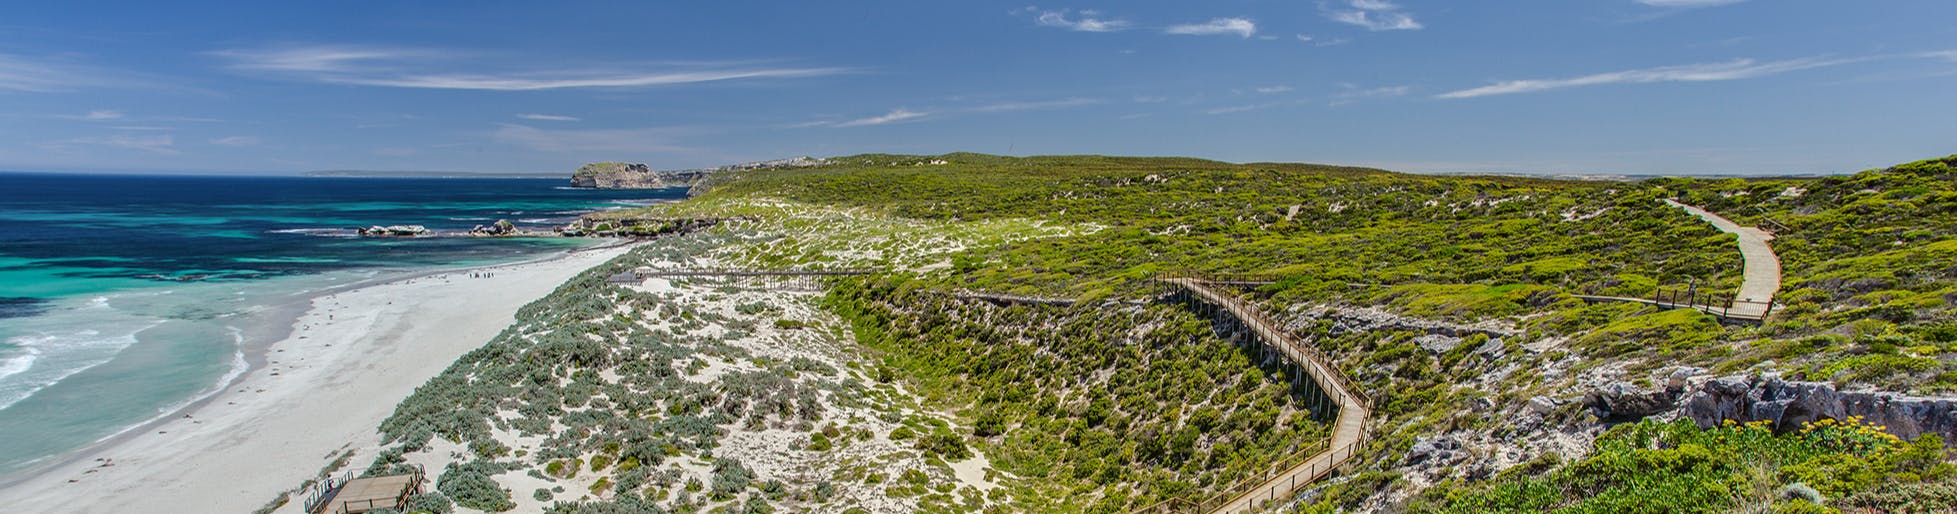 A section of the Kangaroo Island coastline.